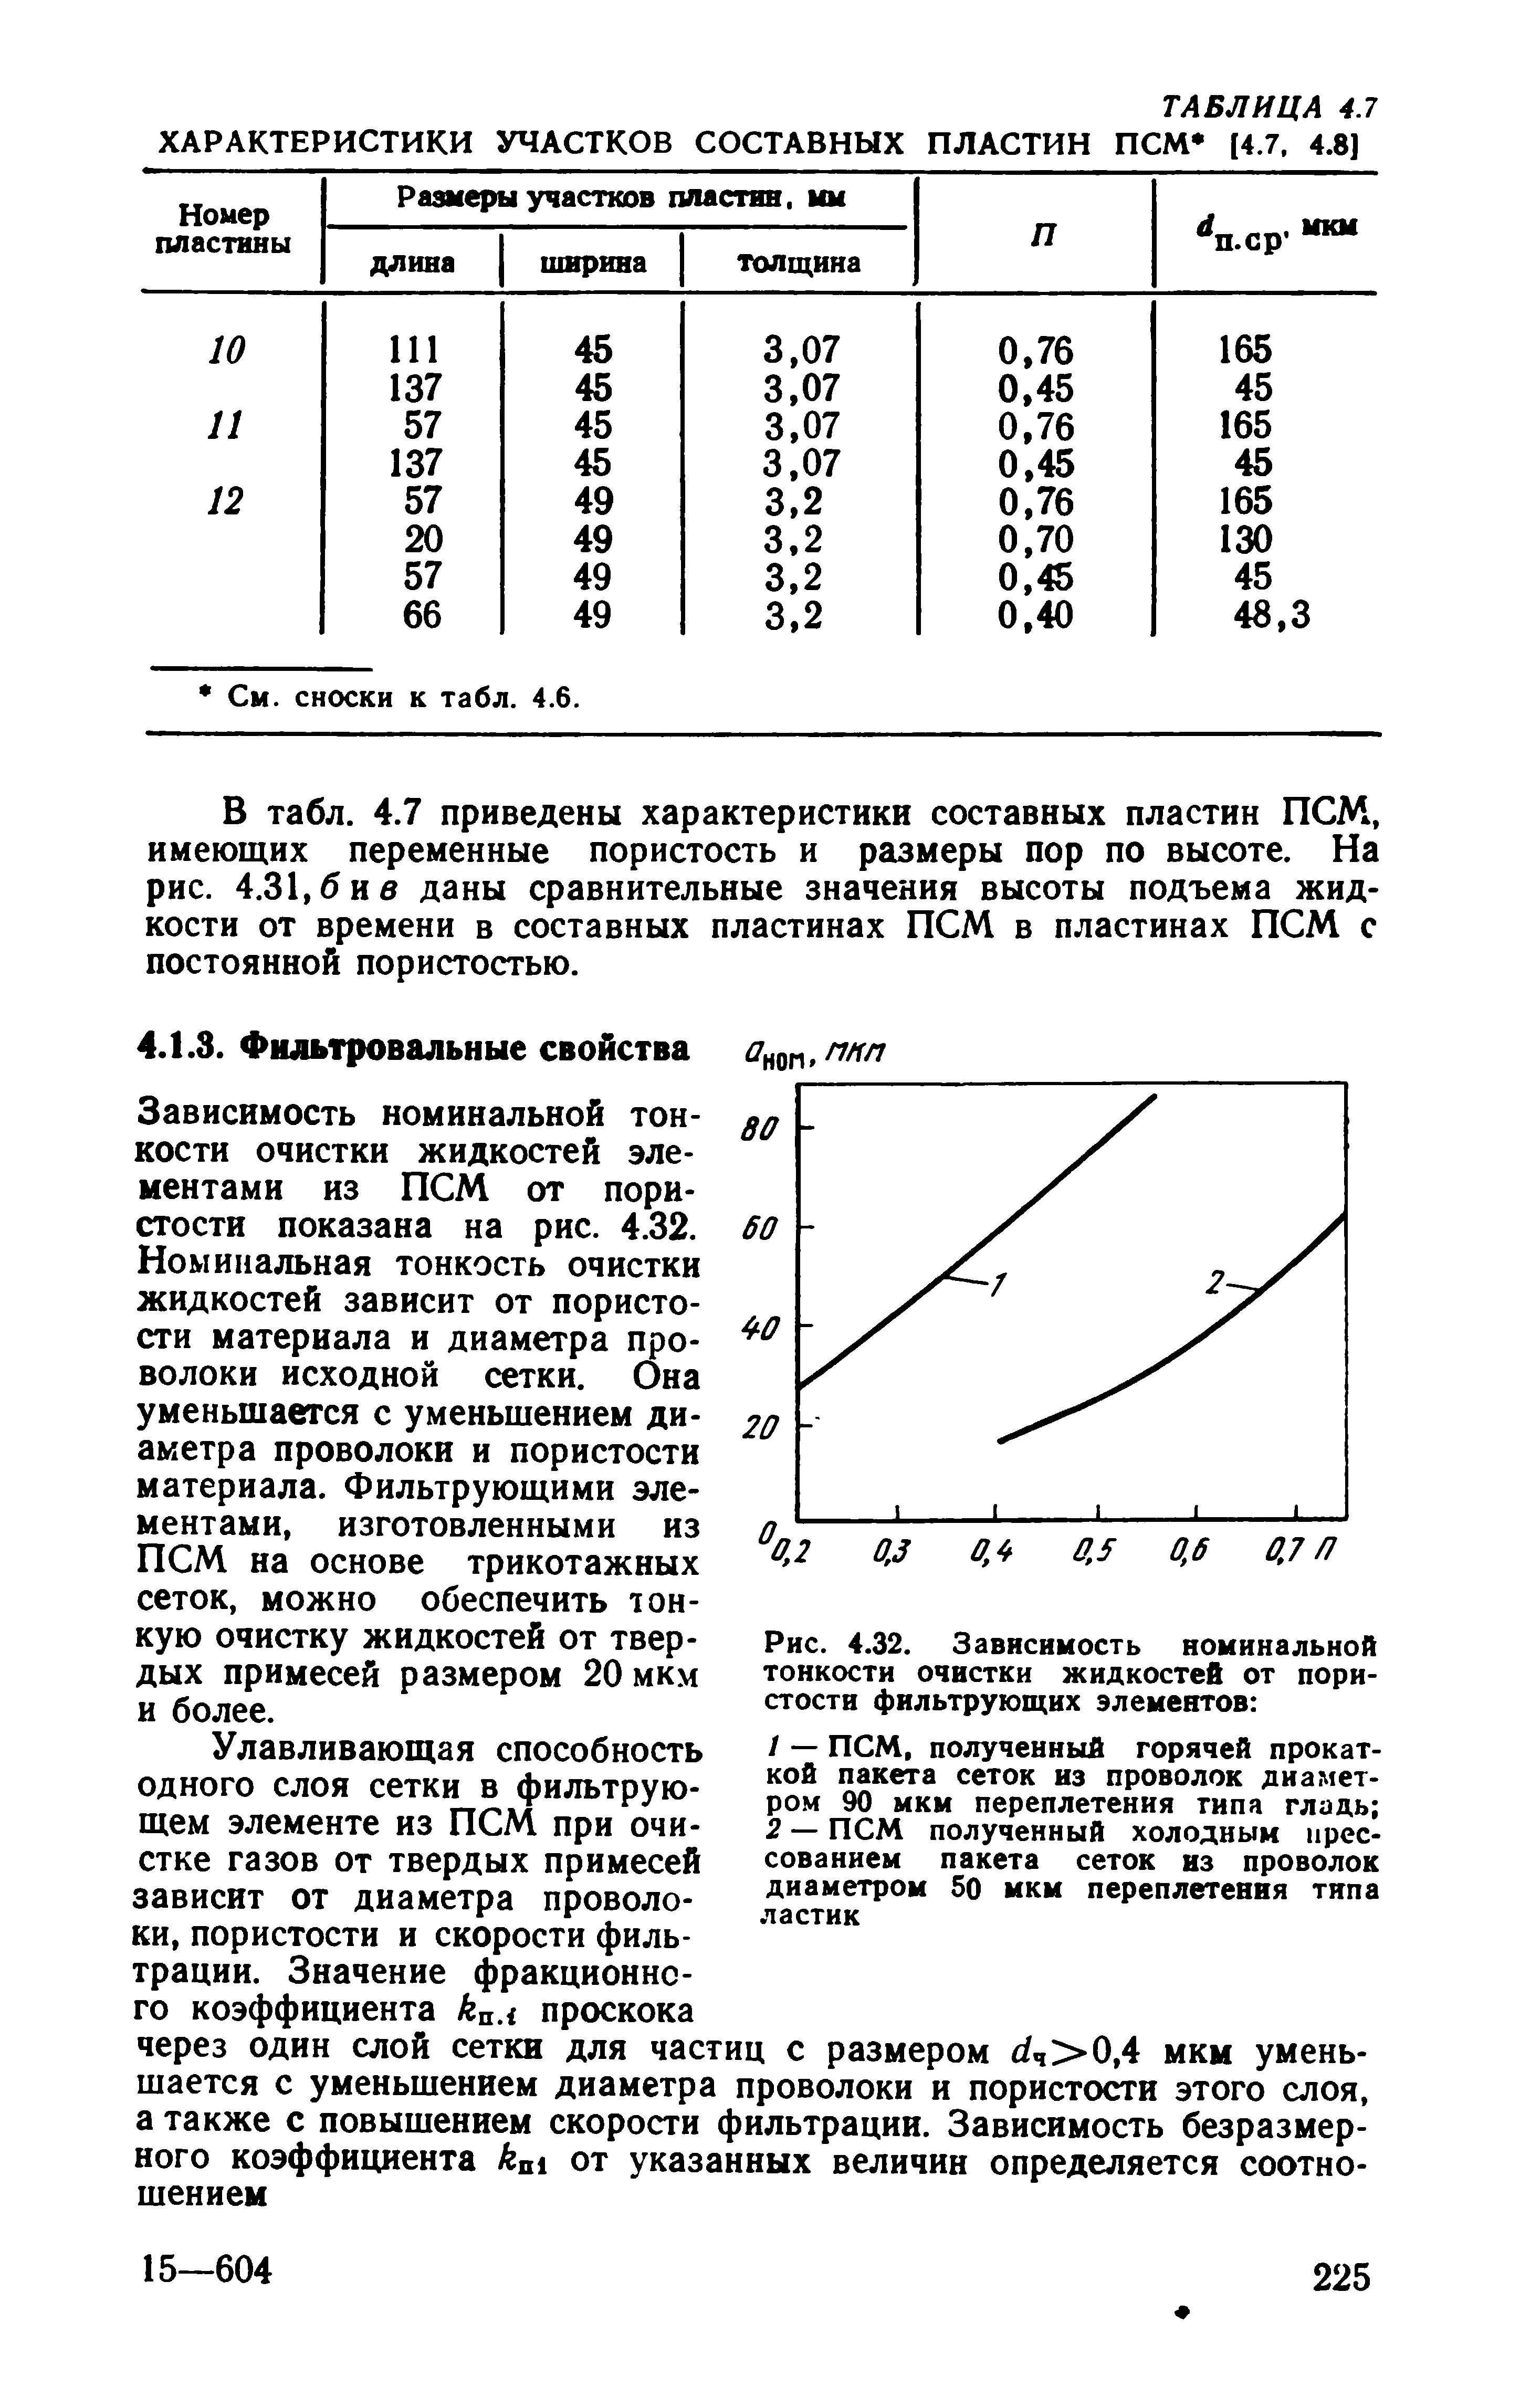 Зависимость номинальной тонкости очистки жидкостей элементами из ПСМ от пористости показана на рис. 4.32.
